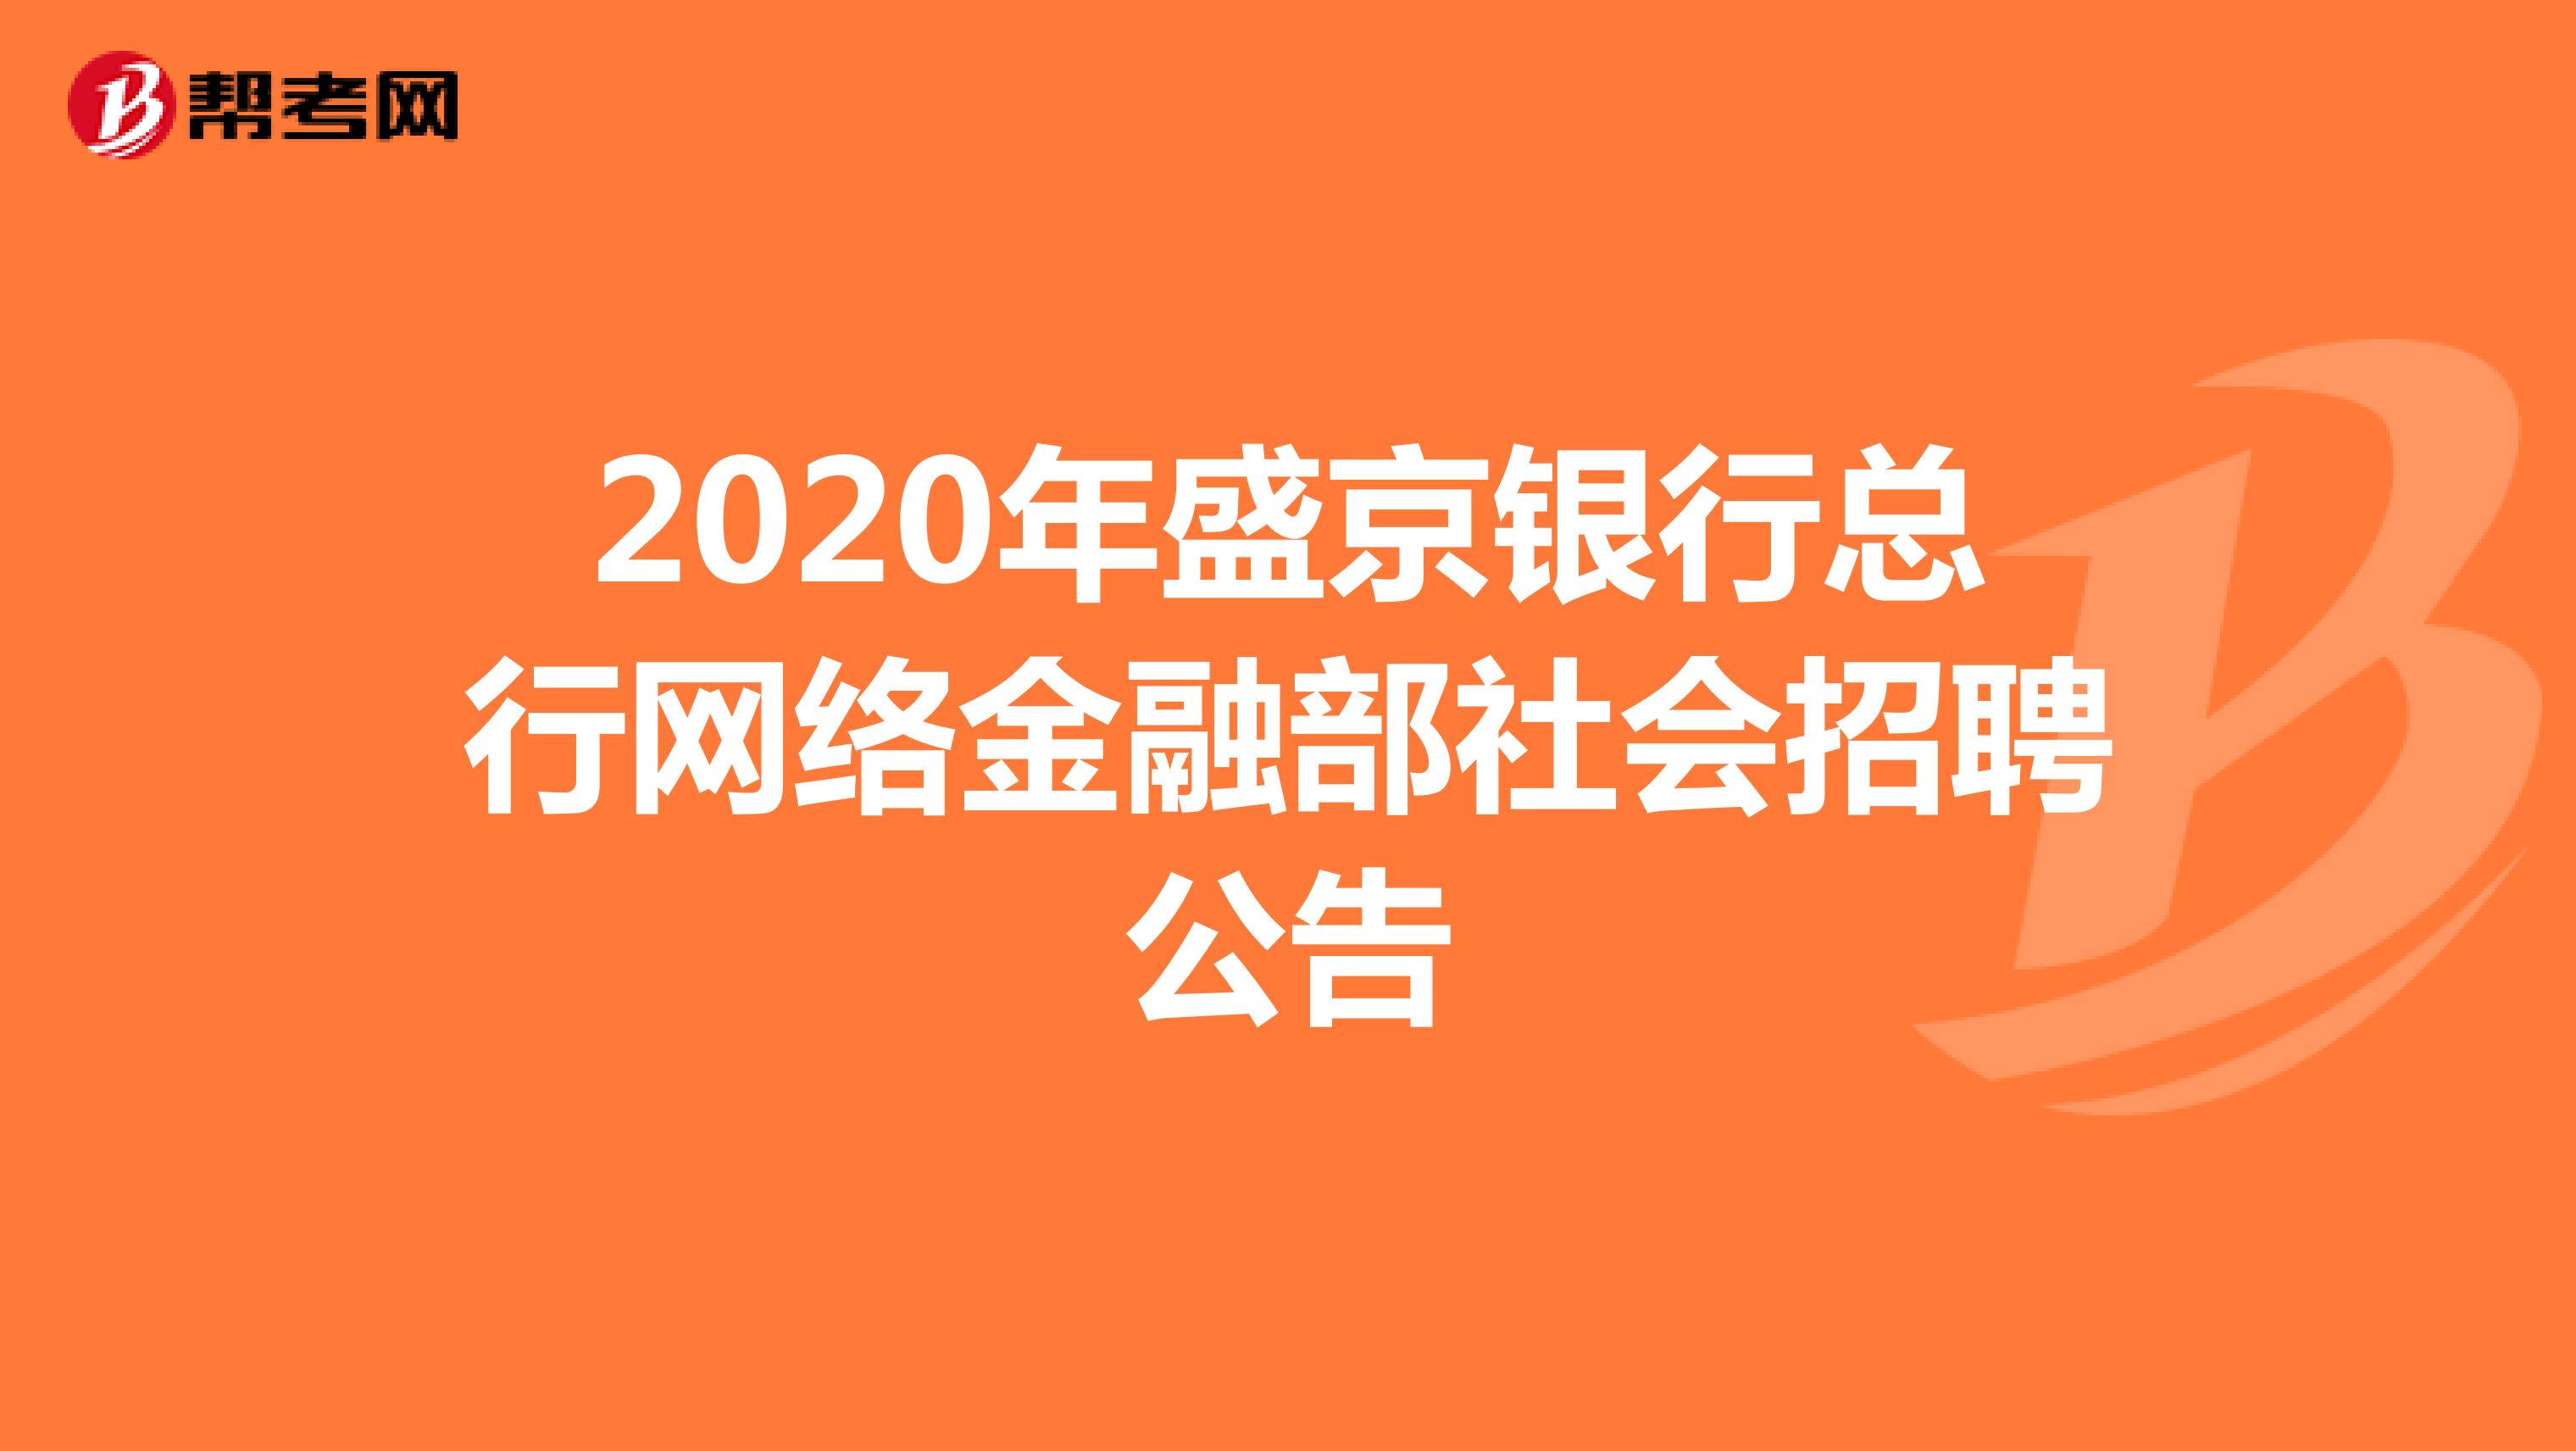 2020年盛京银行总行网络金融部社会招聘公告